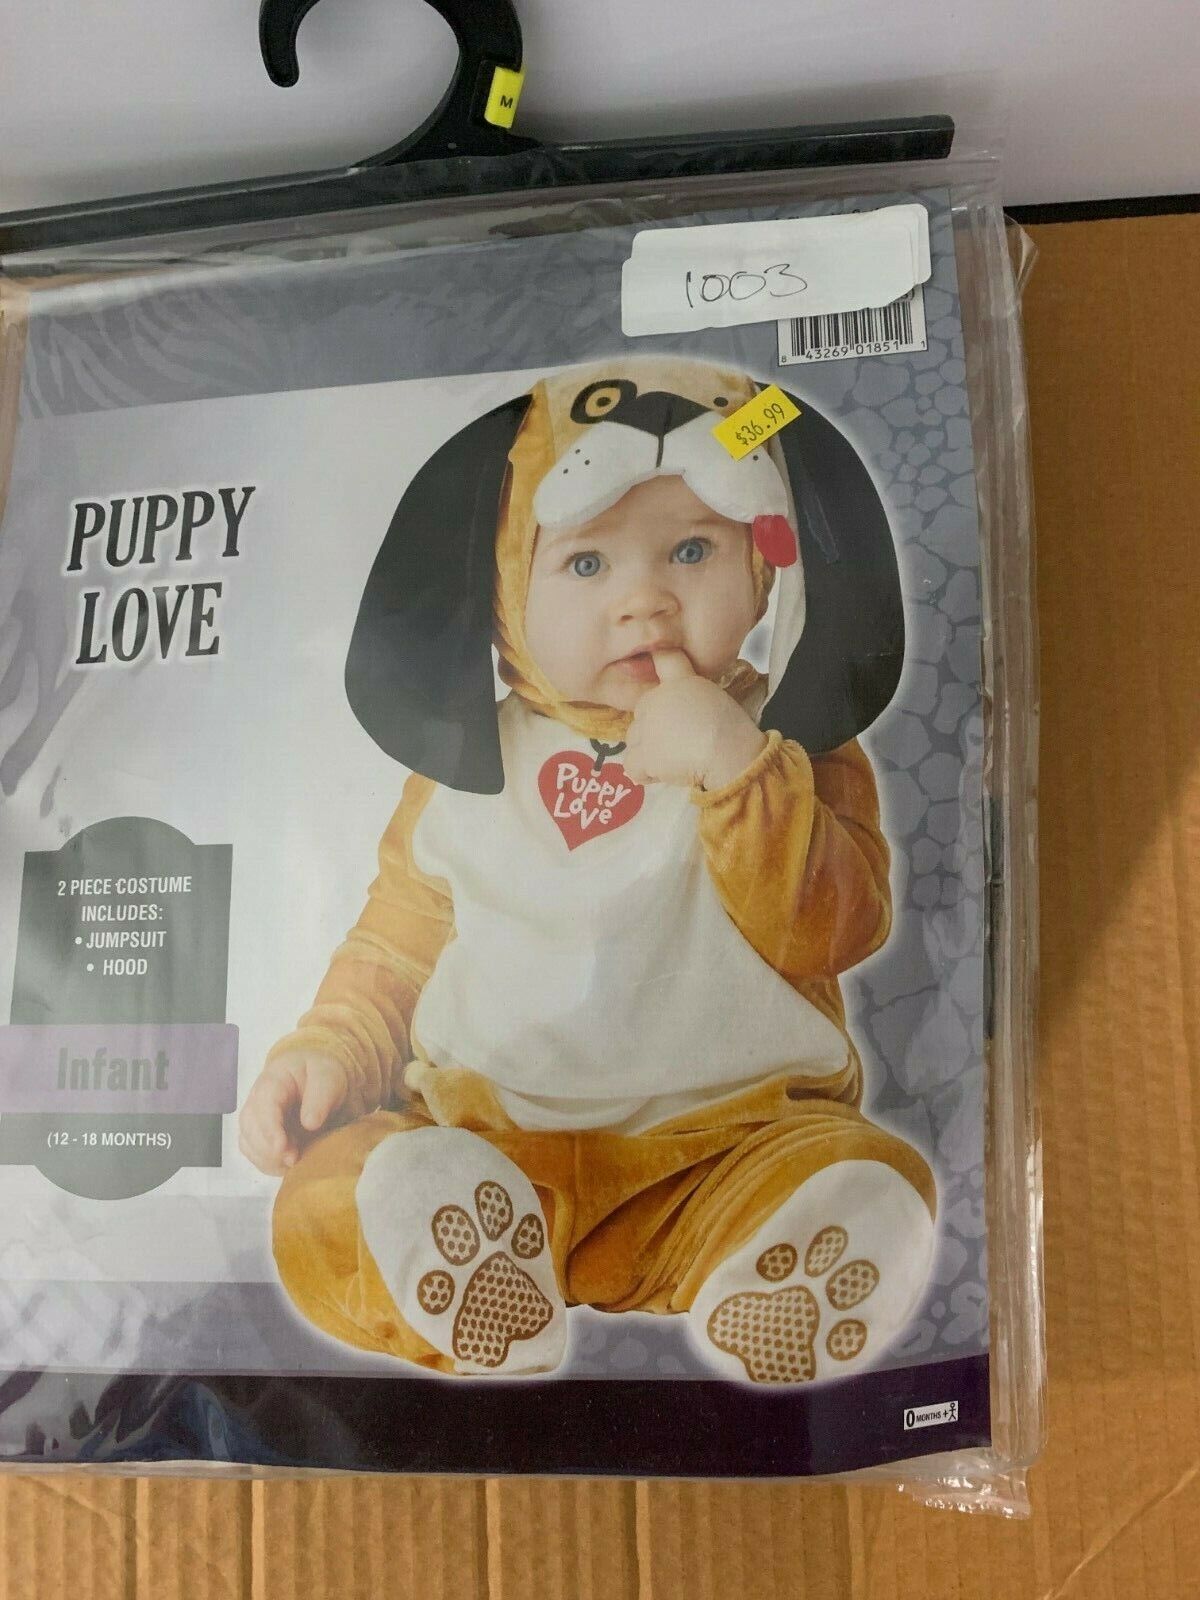 NEW Puppy Love Costume, 6-12 Months, 12-18 Months